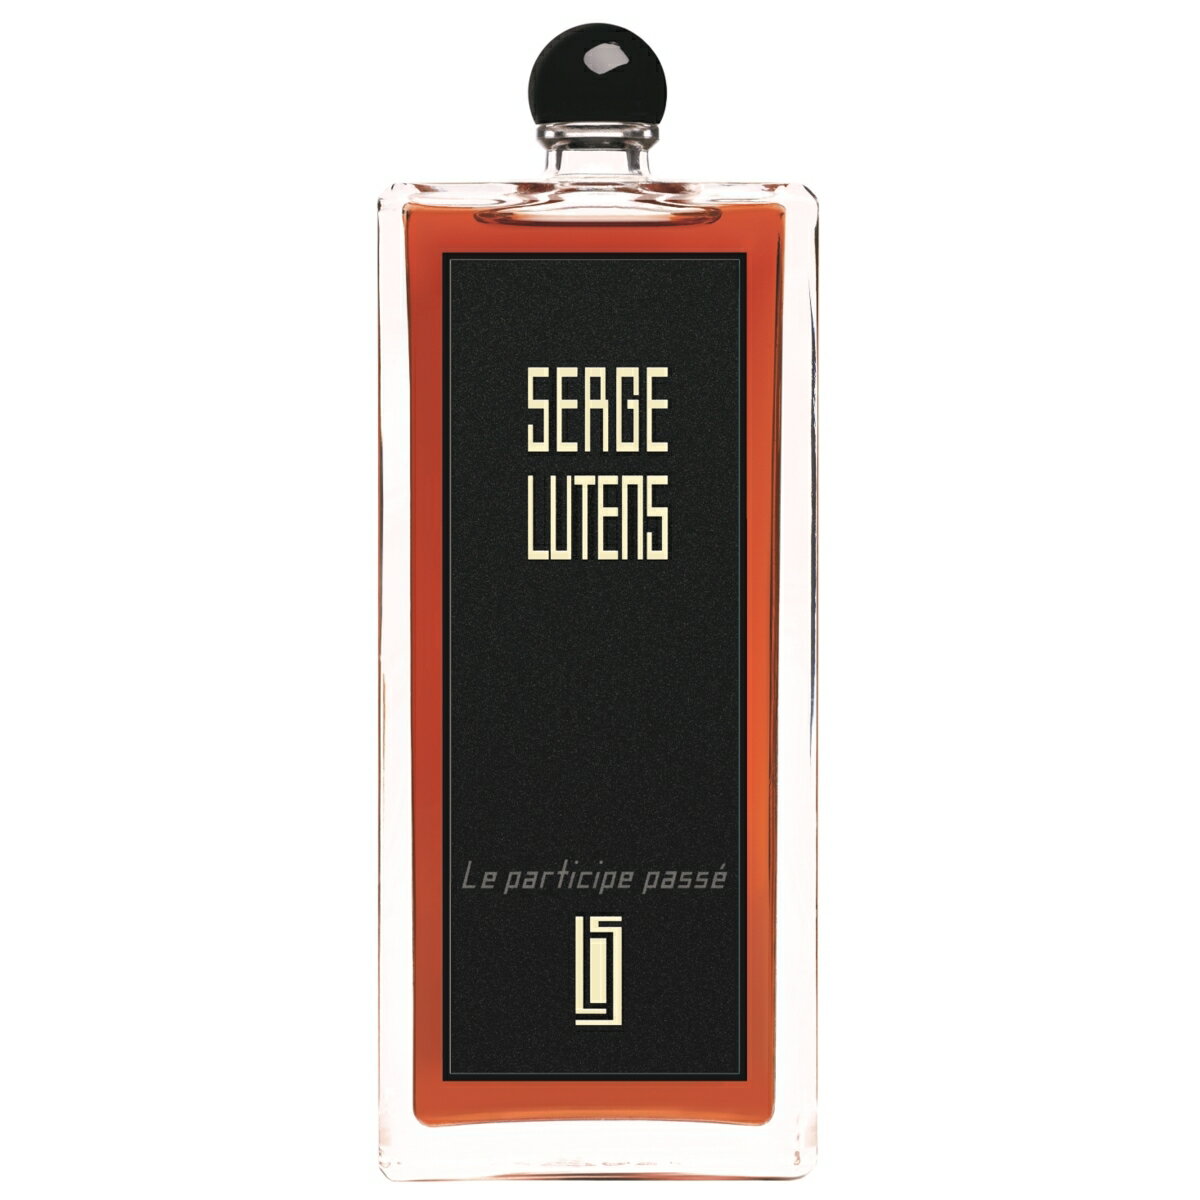 Serge Lutens セルジュ ルタンス パルティシップ パセ Le Participe Passe Perfume EDP 50ml